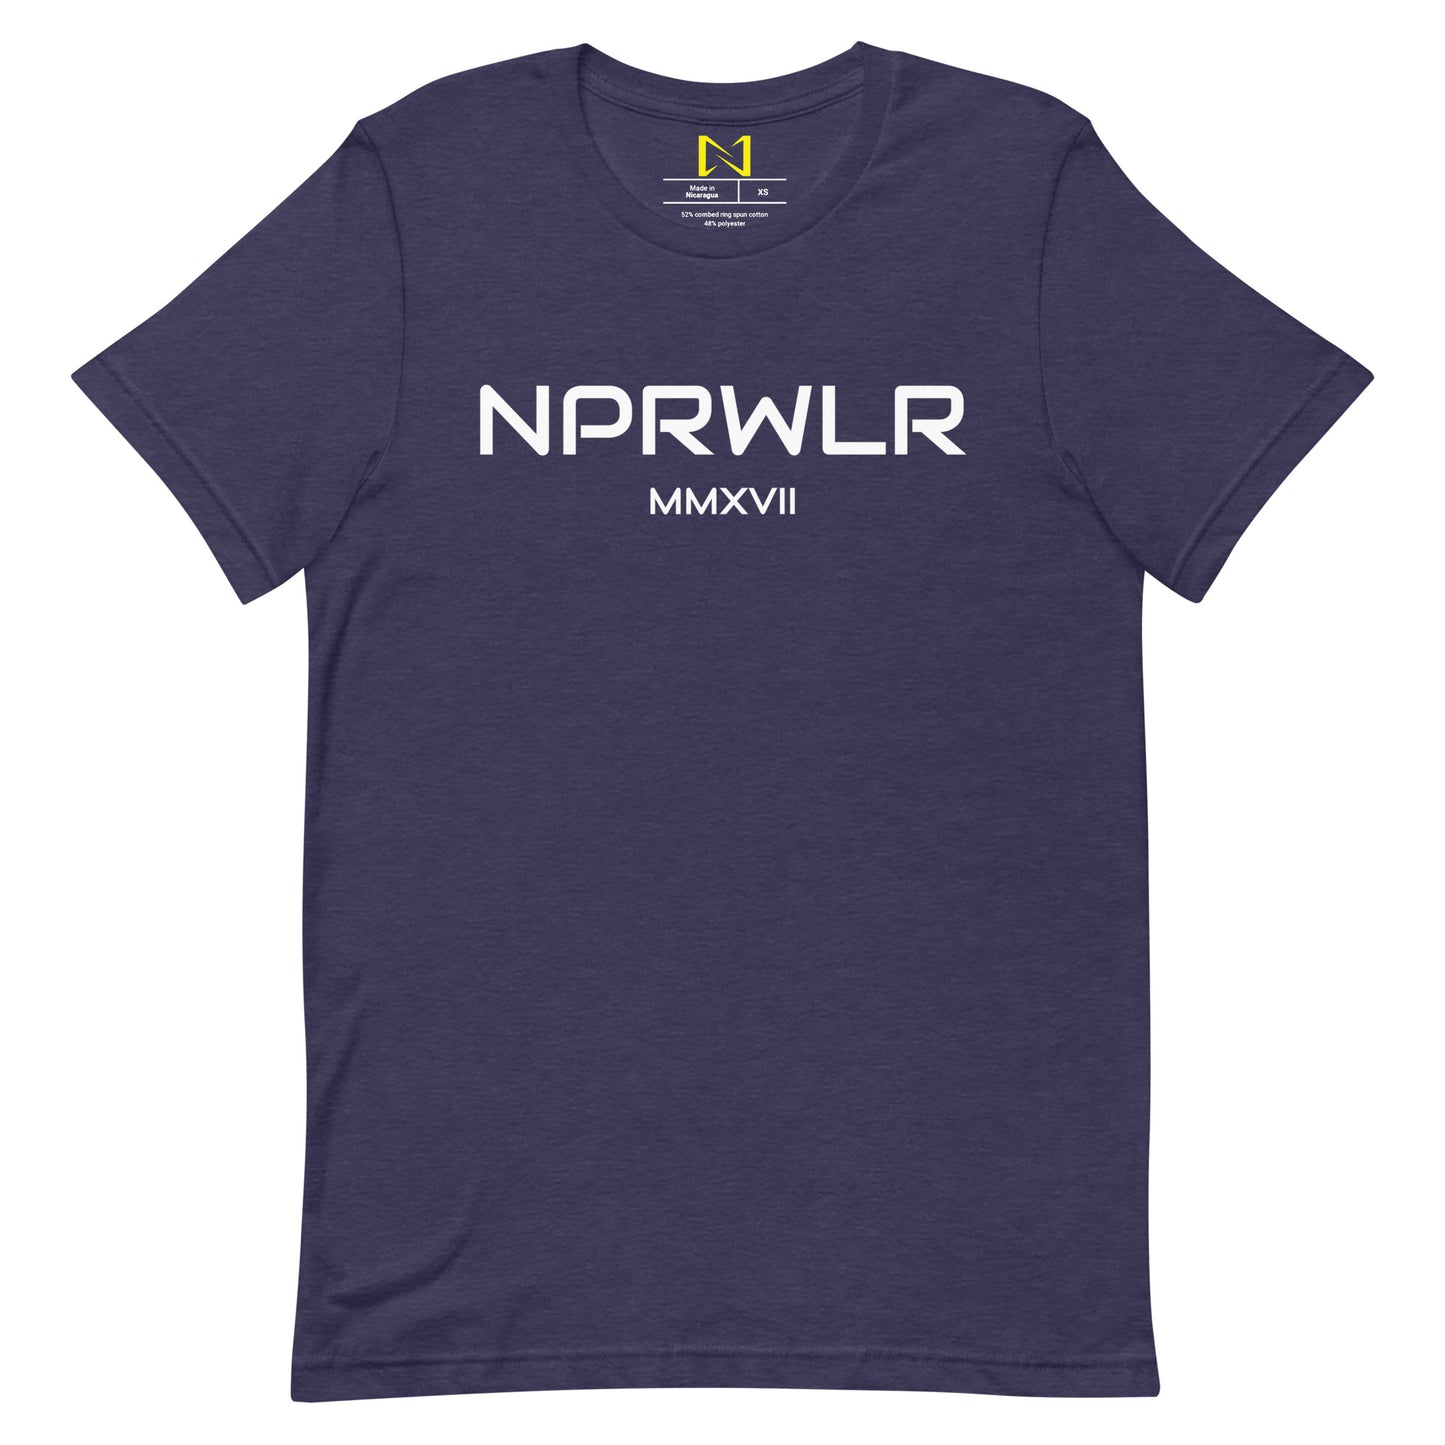 NPRWLR t-shirt